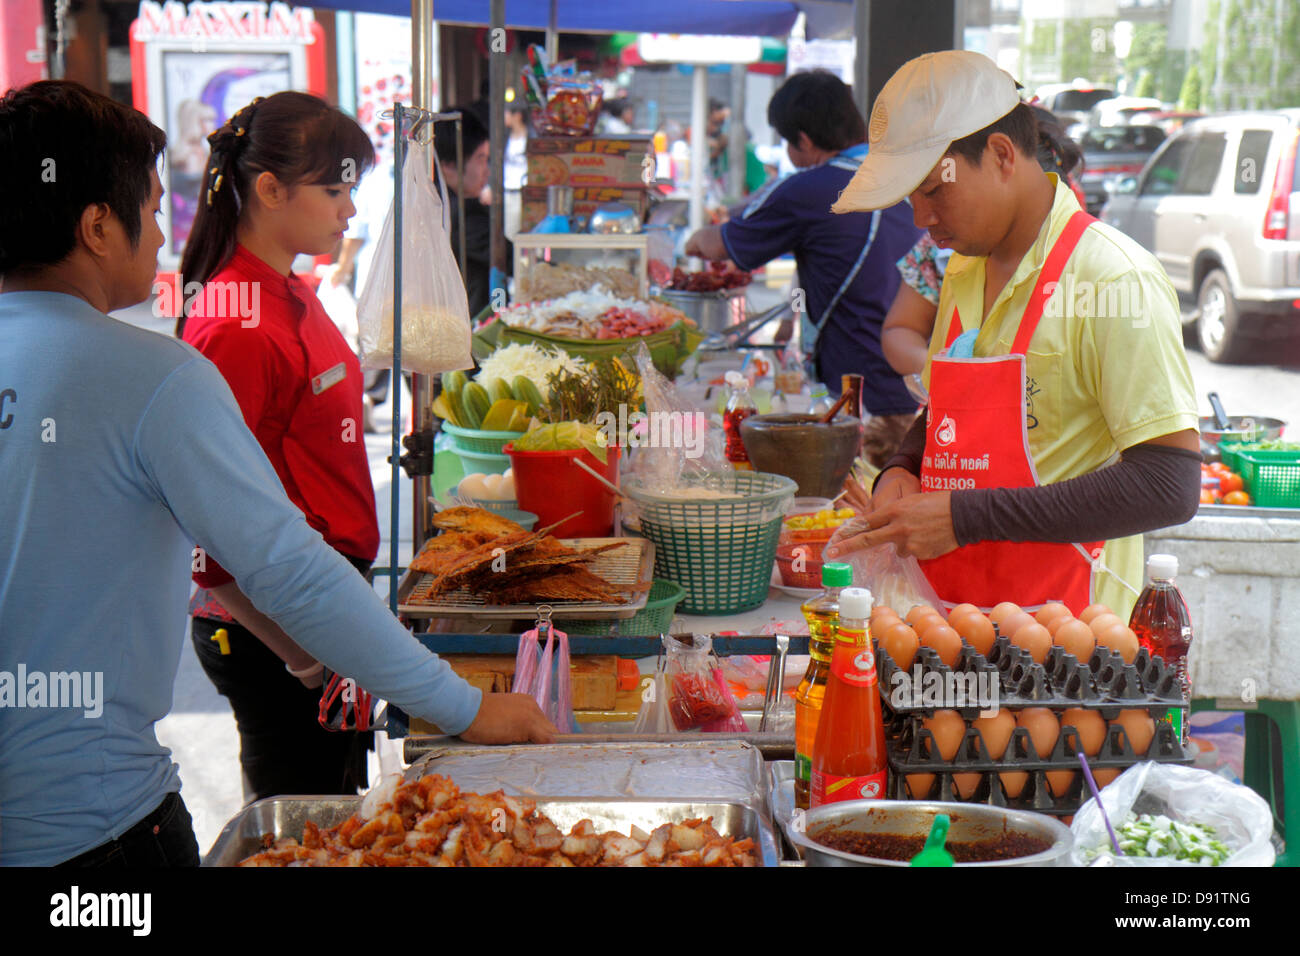 Thailand, Thai, Bangkok, Pathum Wan, Rama 1 Road, asiatischer Mann Männer männlich, Frau weibliche Frauen, Verkäufer, Stände Stand Markt Käufer Kauf Verkauf, stree Stockfoto